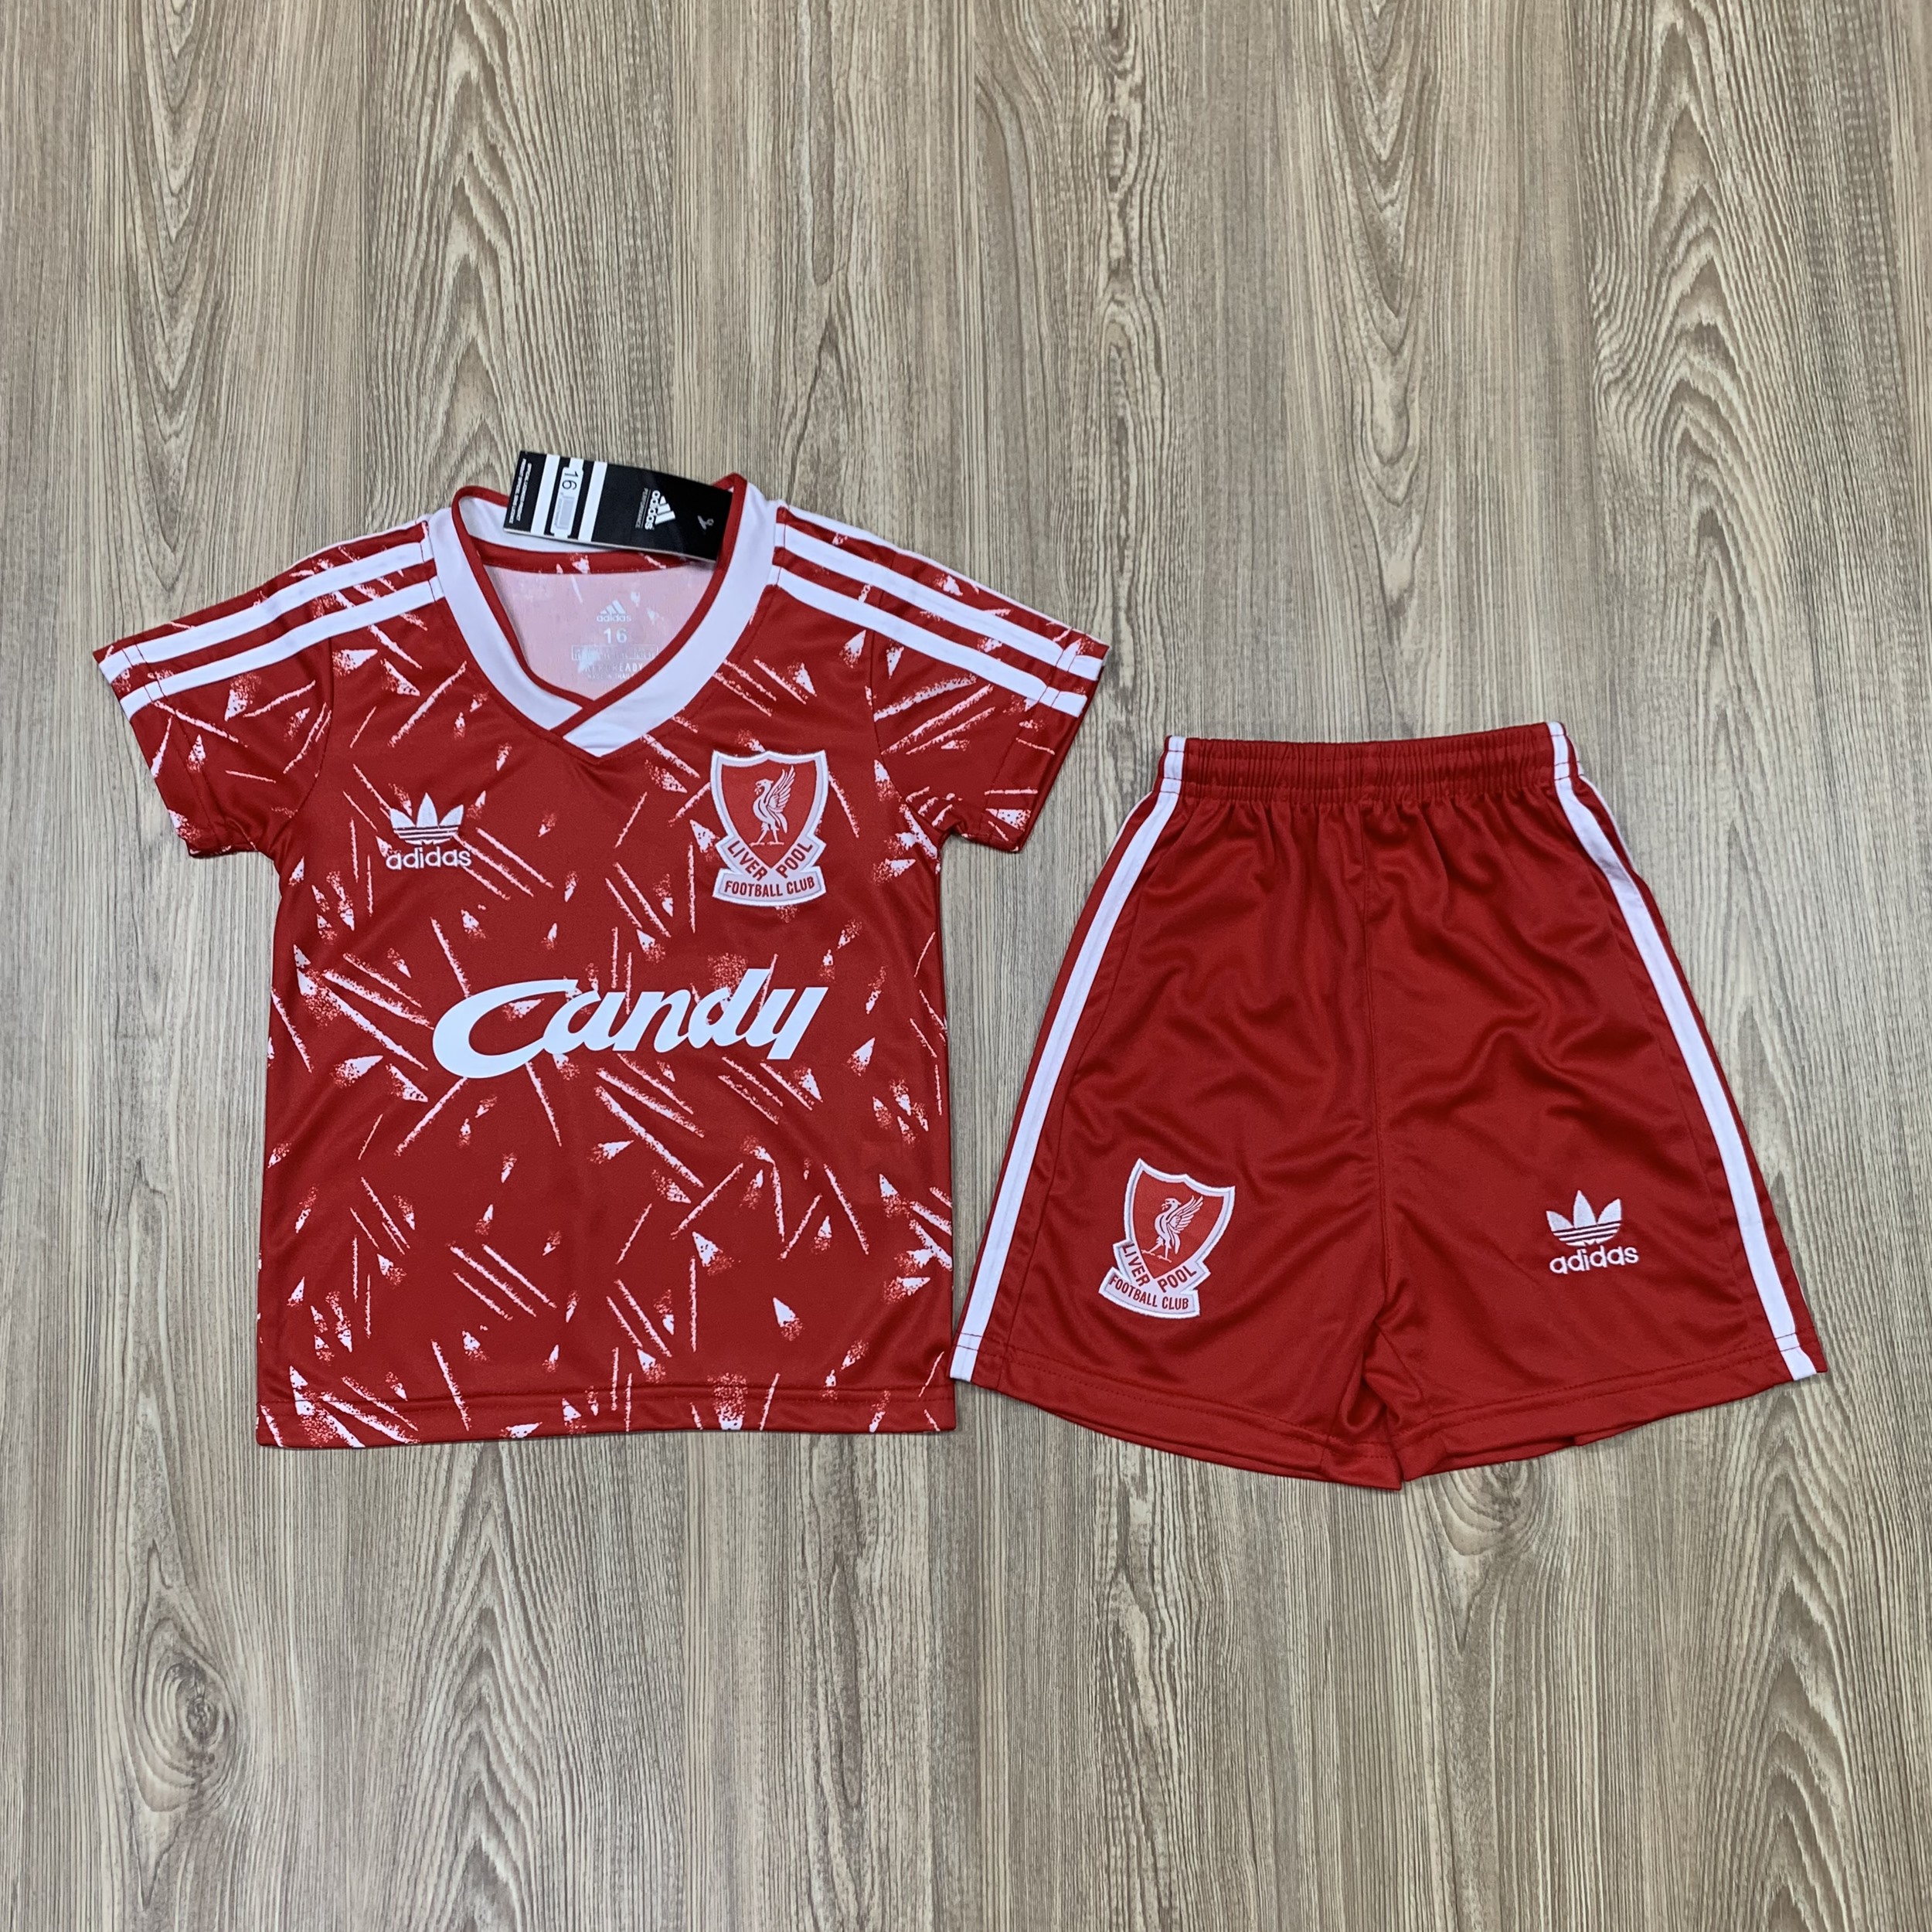 ชุดบอลเด็ก Liverpool ชุดกีฬาเด็ก ทีมลิเวอร์พูล ซื้อครั้งเดียวได้ทั้งชุด (เสื้อ+กางเกง) ตัวเดียวในราคาส่ง เกรด-A